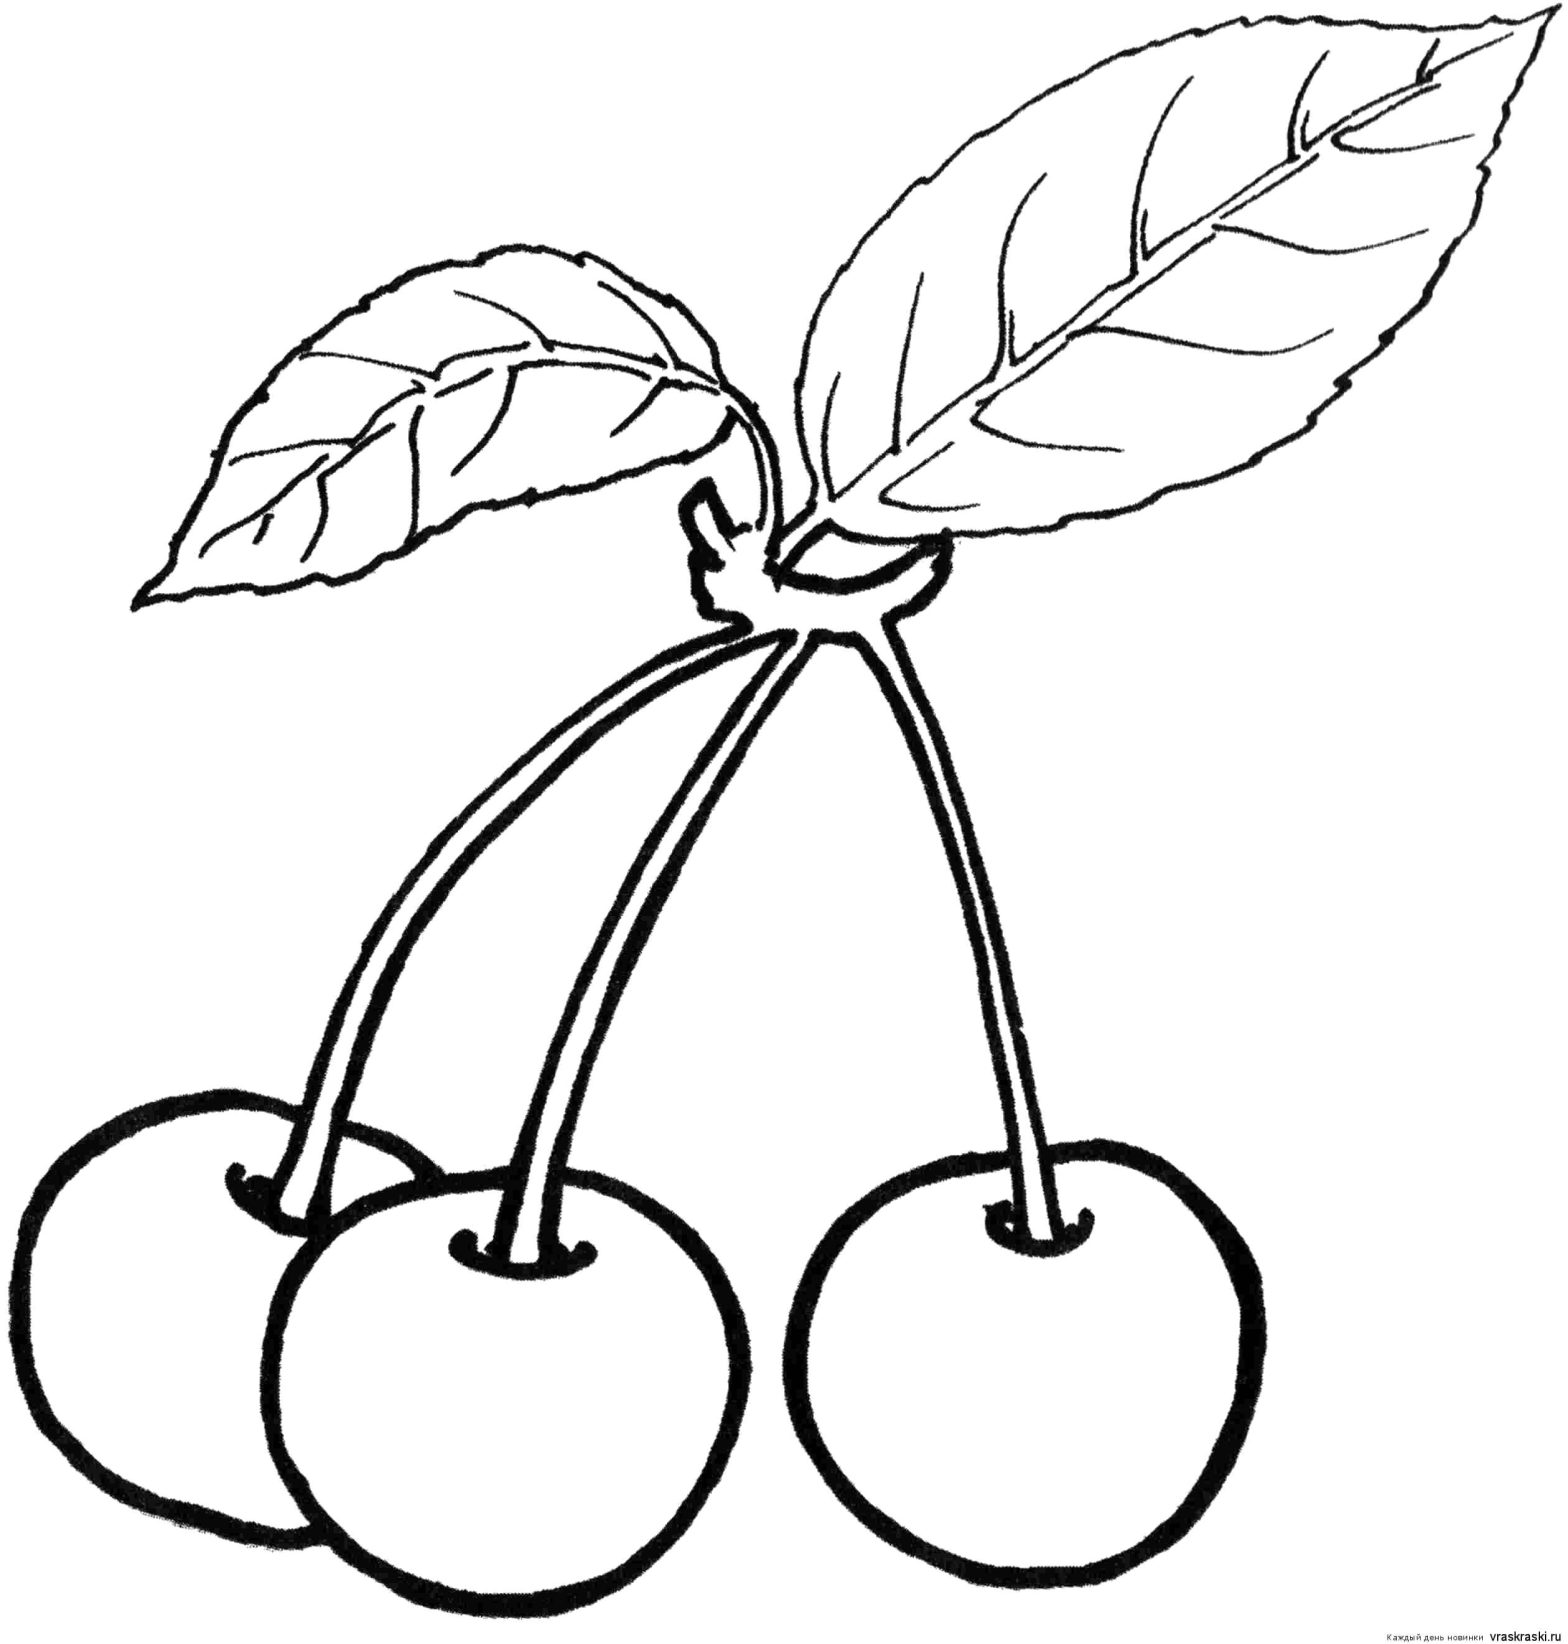 Раскраски Ягоды и вишня для малышей - бесплатно скачать или распечатать онлайн (ягоды, вишня)